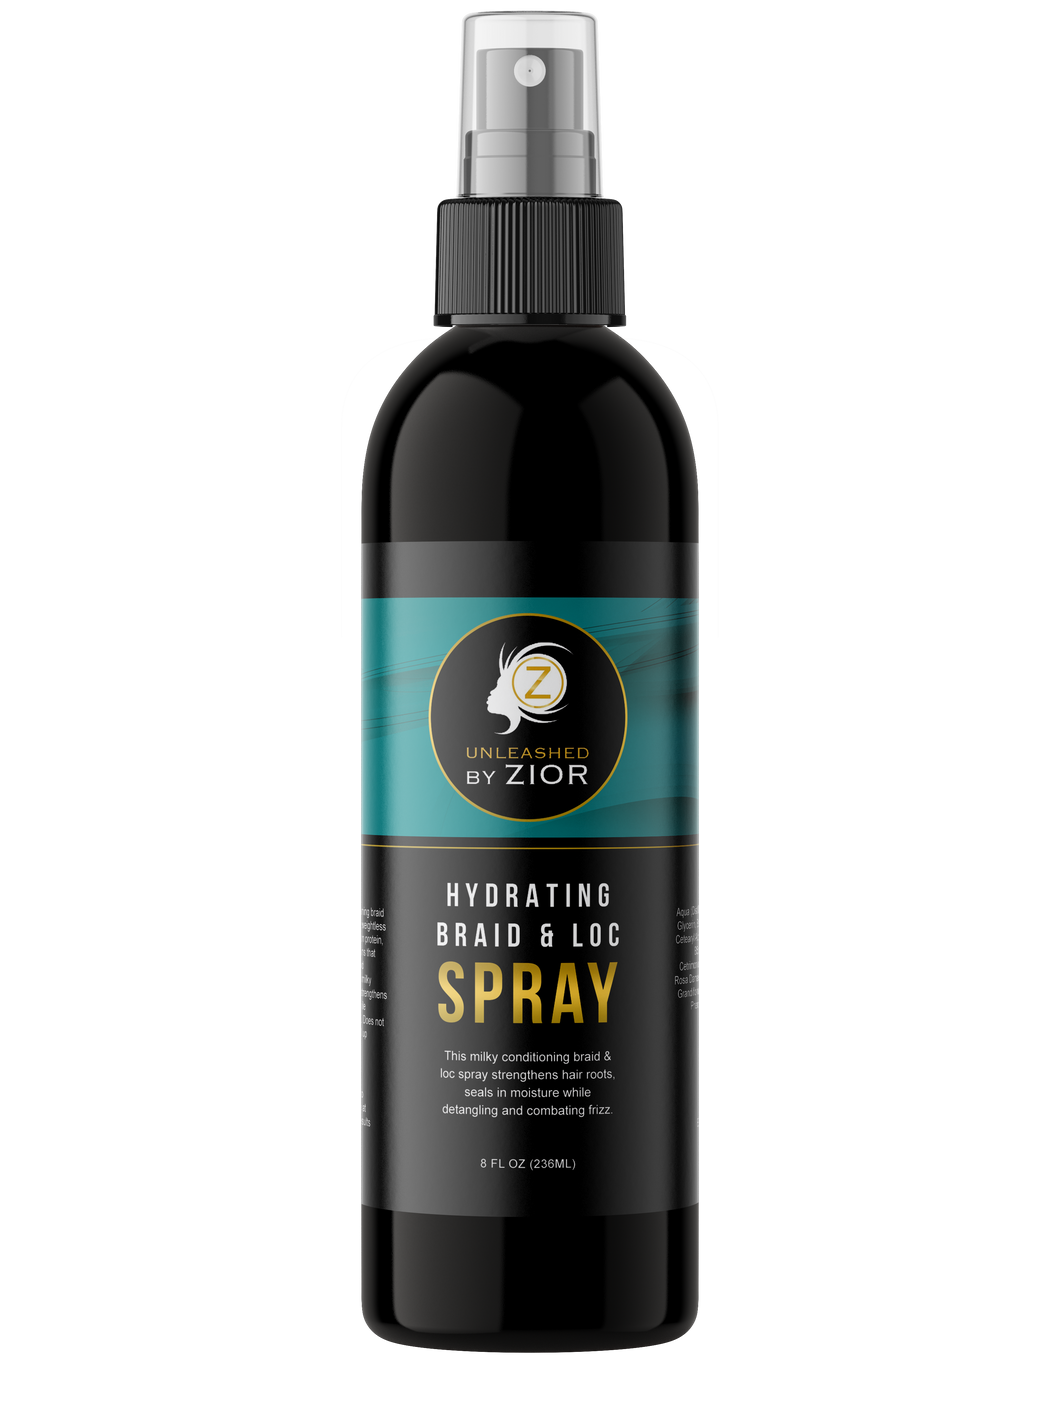 Hydrating Braid & Loc Spray